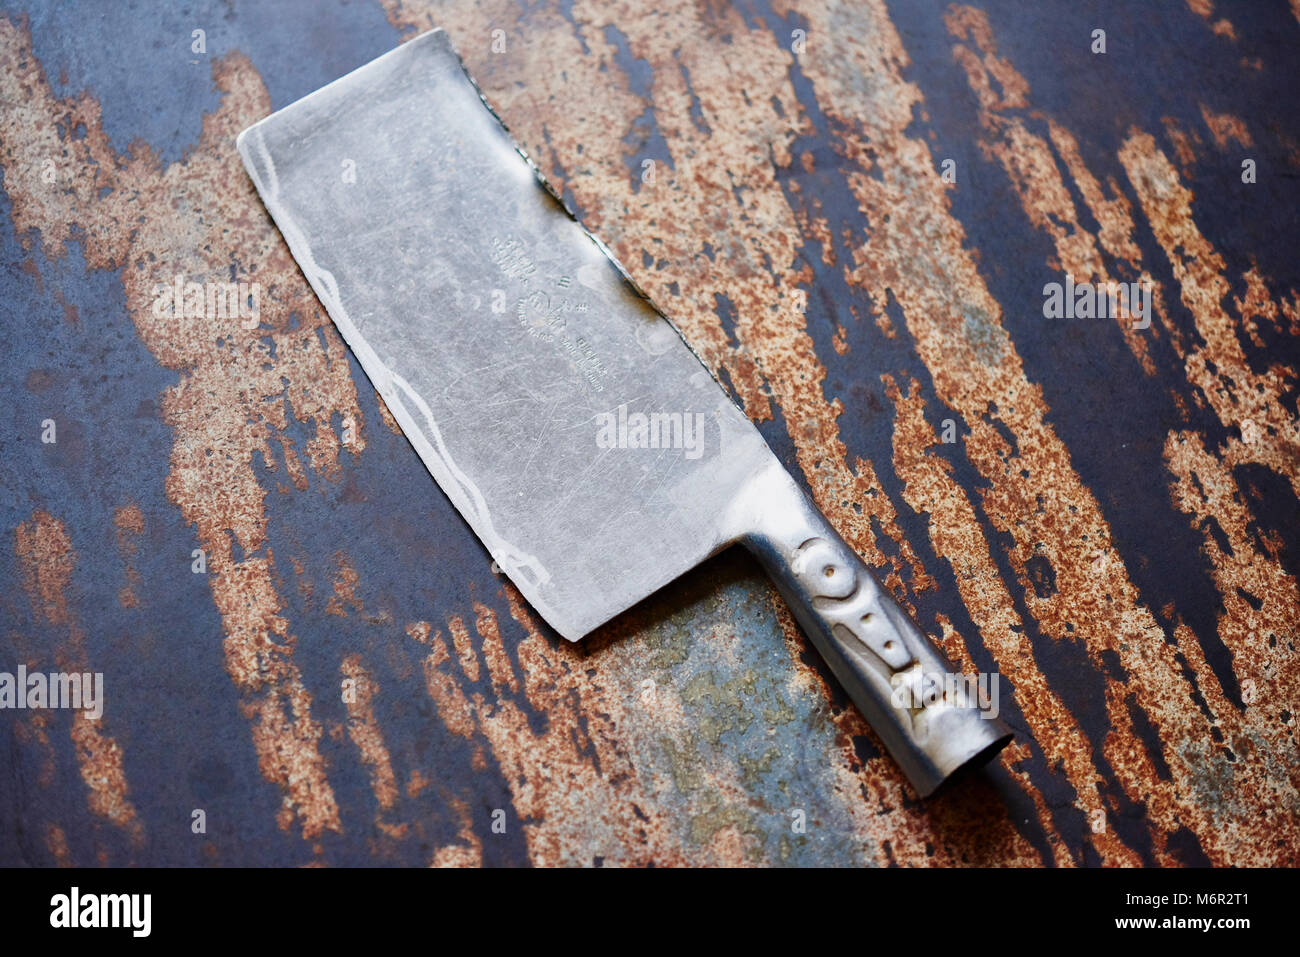 Grande la cucina dello chef coltello cleaver vintage in distressed la superficie del tavolo Foto Stock